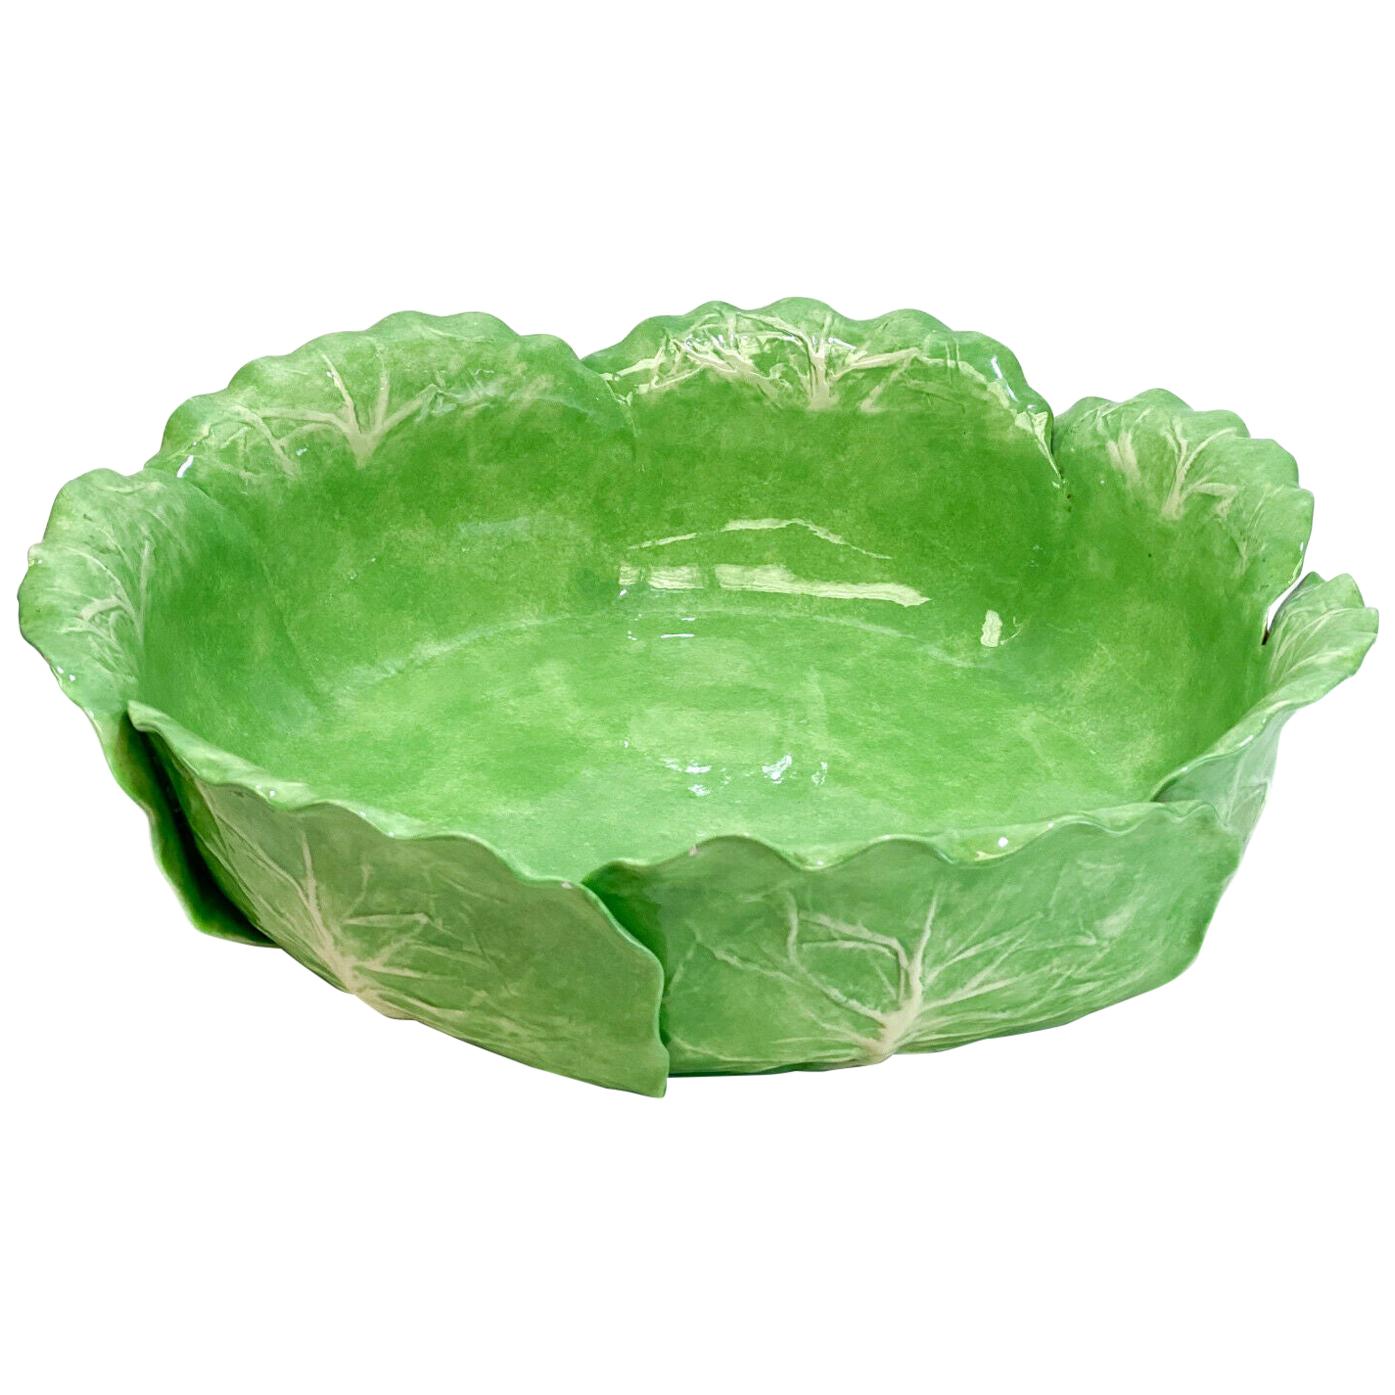 Dodie Thayer Jupiter Lettuce Leaf Earthenware Porcelain Large Centerpiece Bowl For Sale